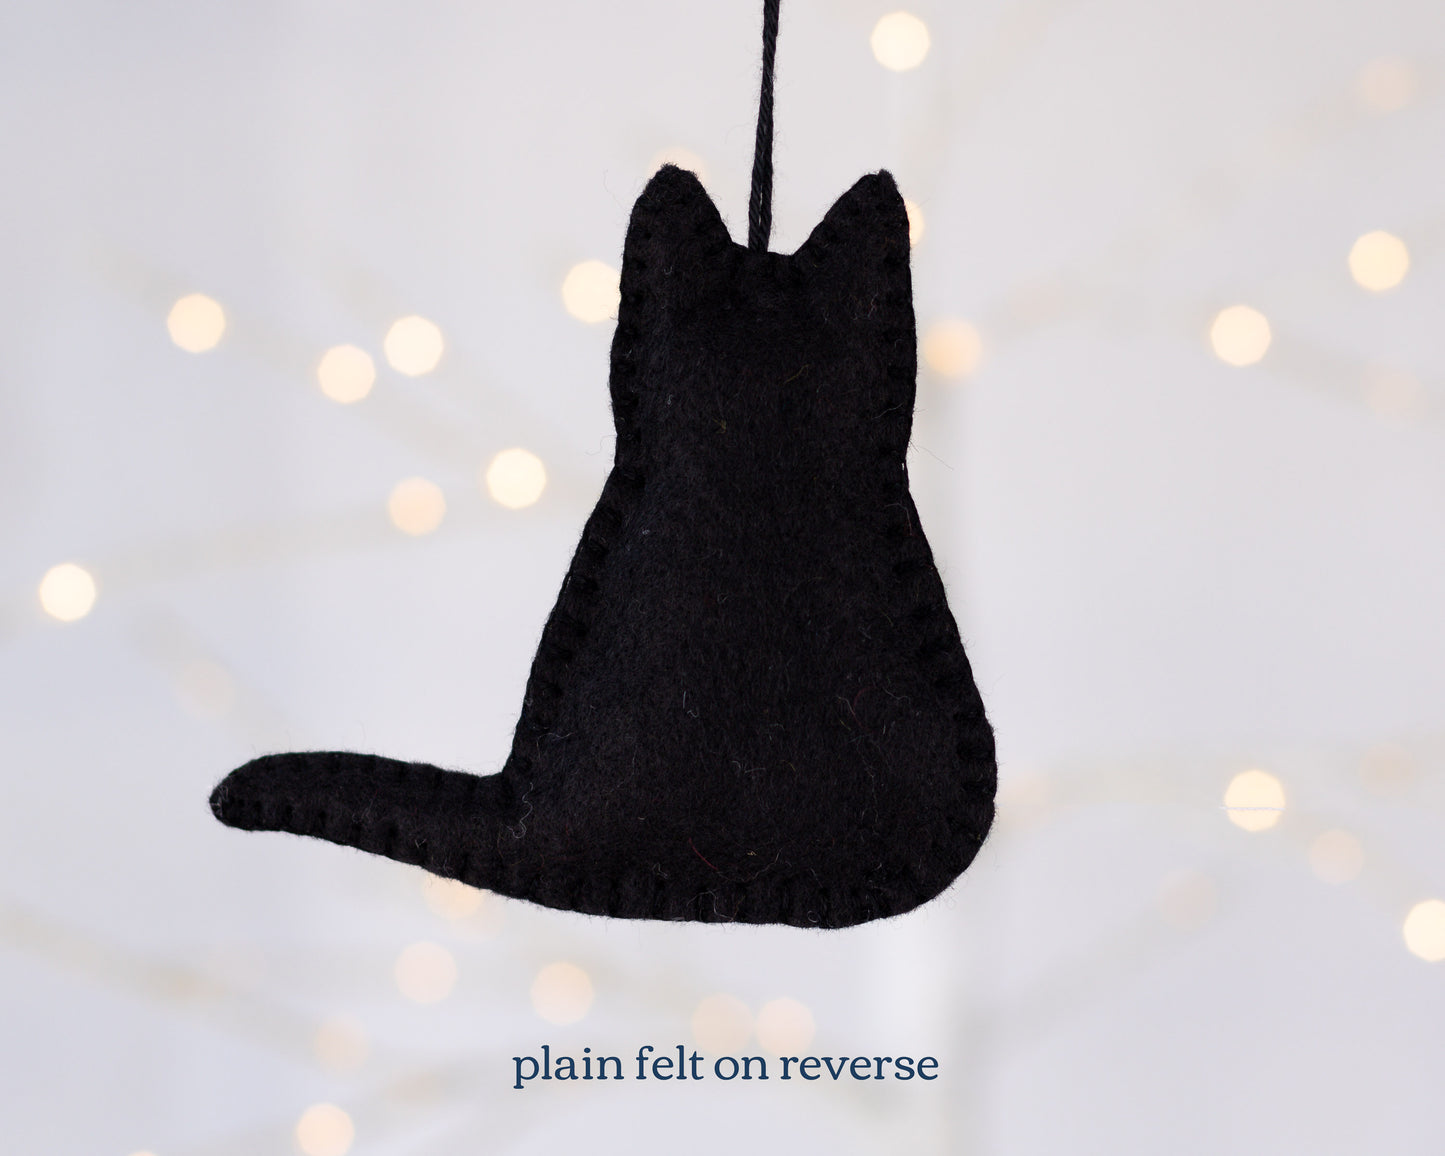 Black Cat Felt Ornament